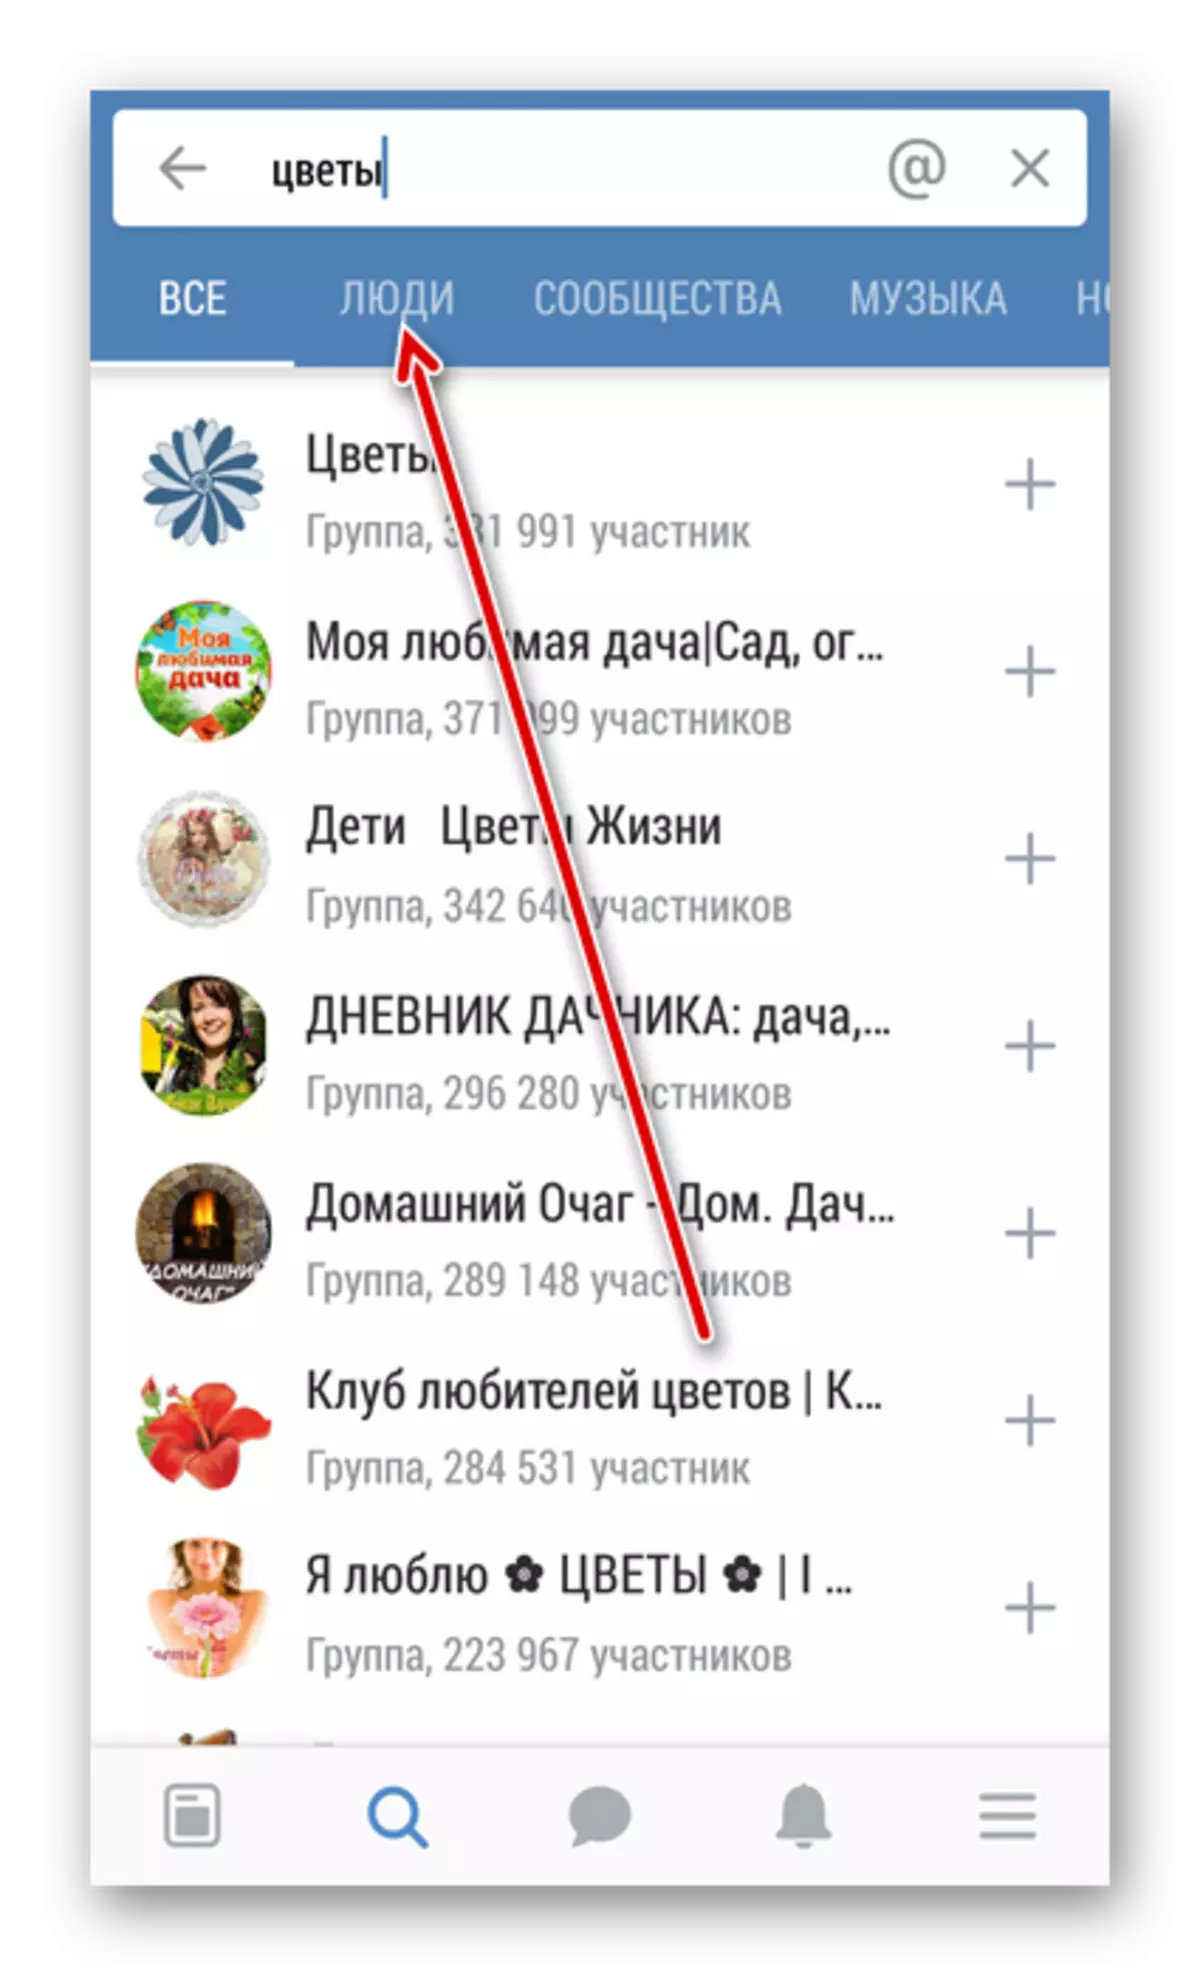 Beralih kepada pencarian untuk orang dalam aplikasi VKontakte